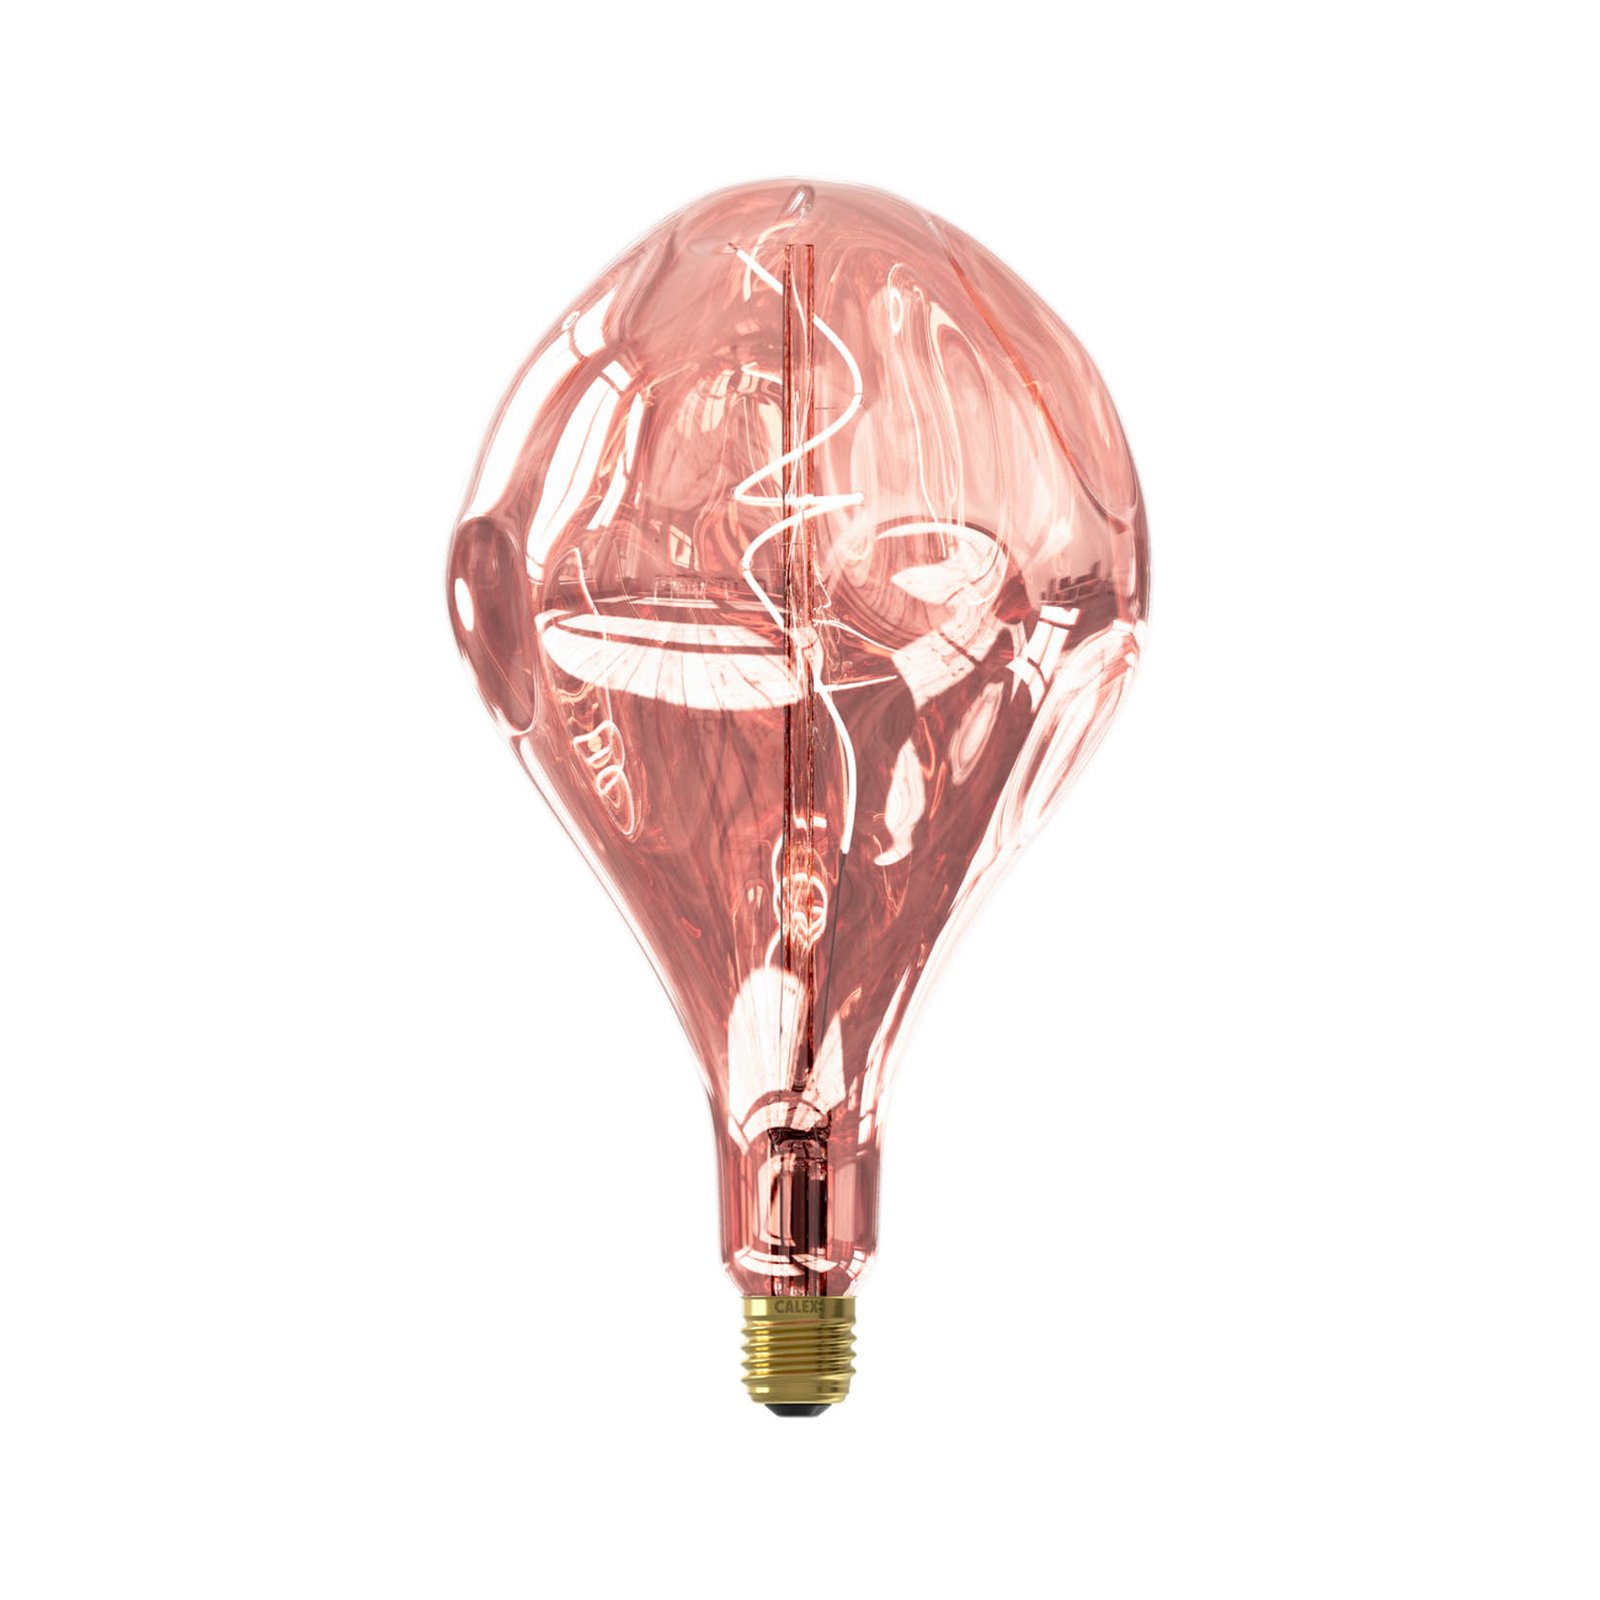 Calex Organic Evo lampadina LED E27 6W dim rosé